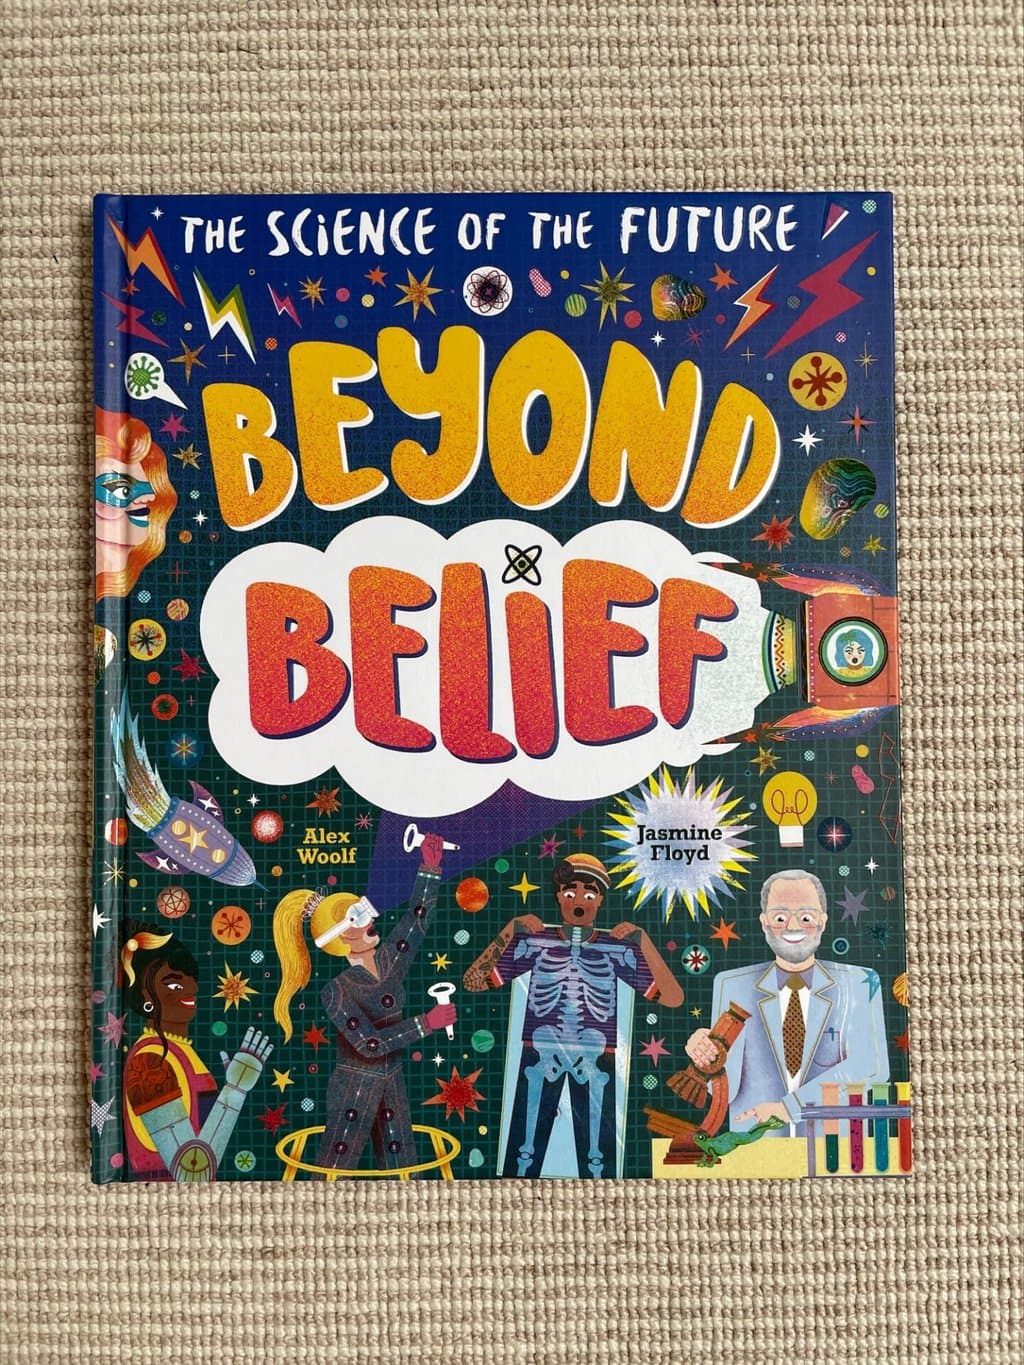 Beyond Belief – Alex Woolf